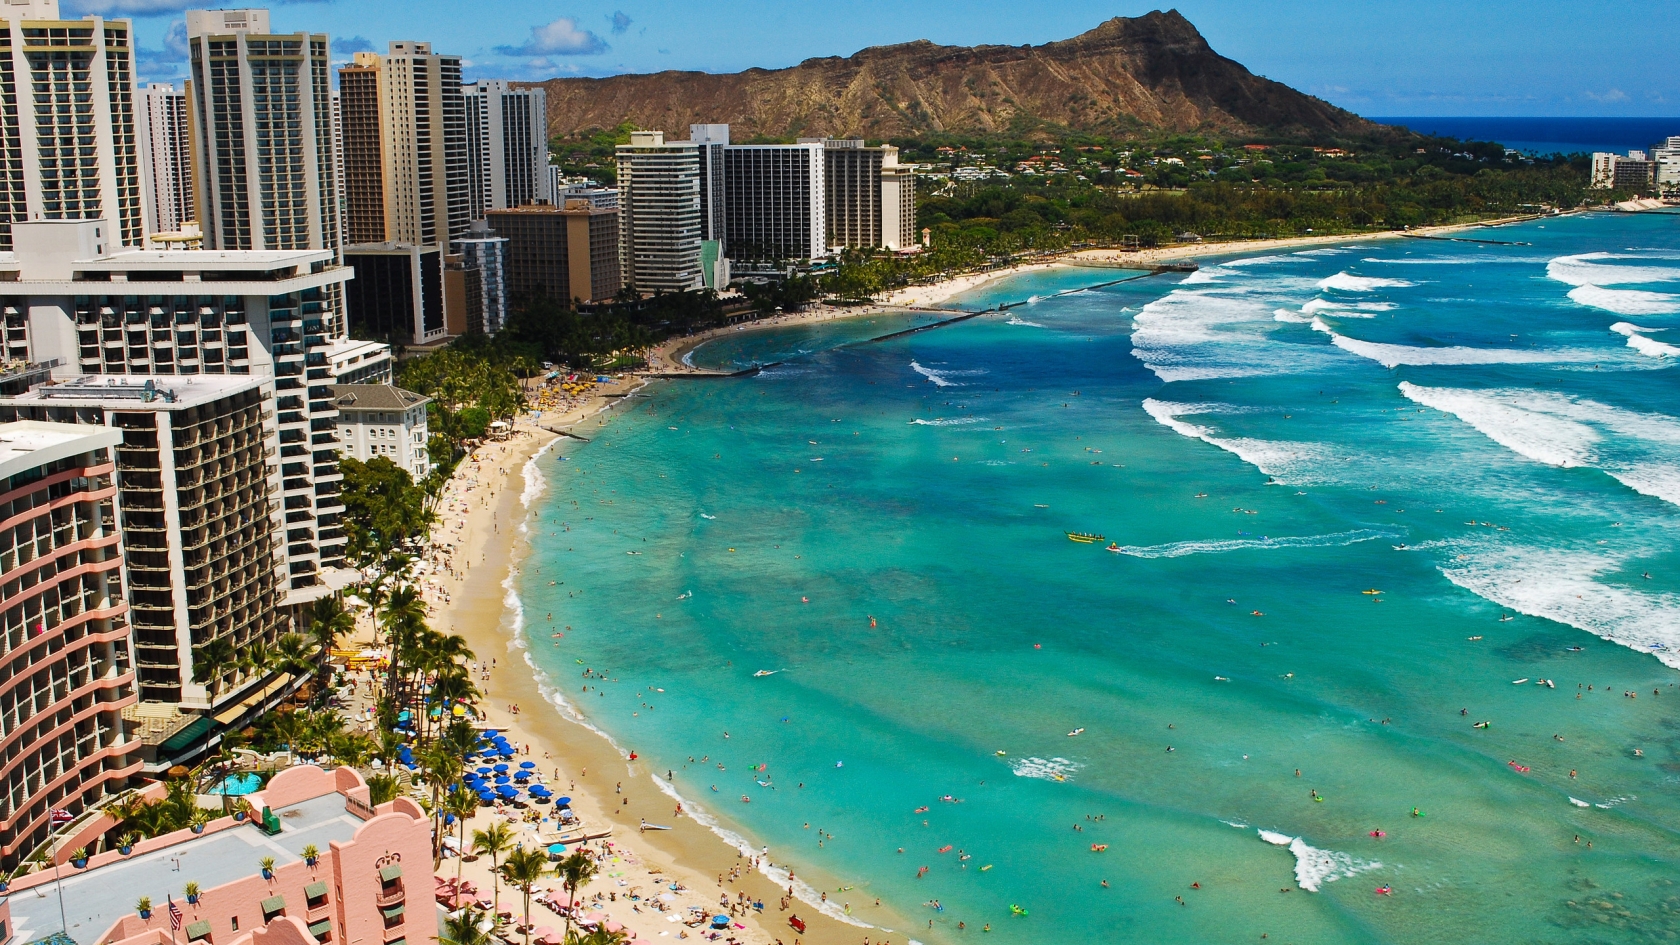 Waikiki Beach Hawaii, for 1680 x 945 HDTV resolution